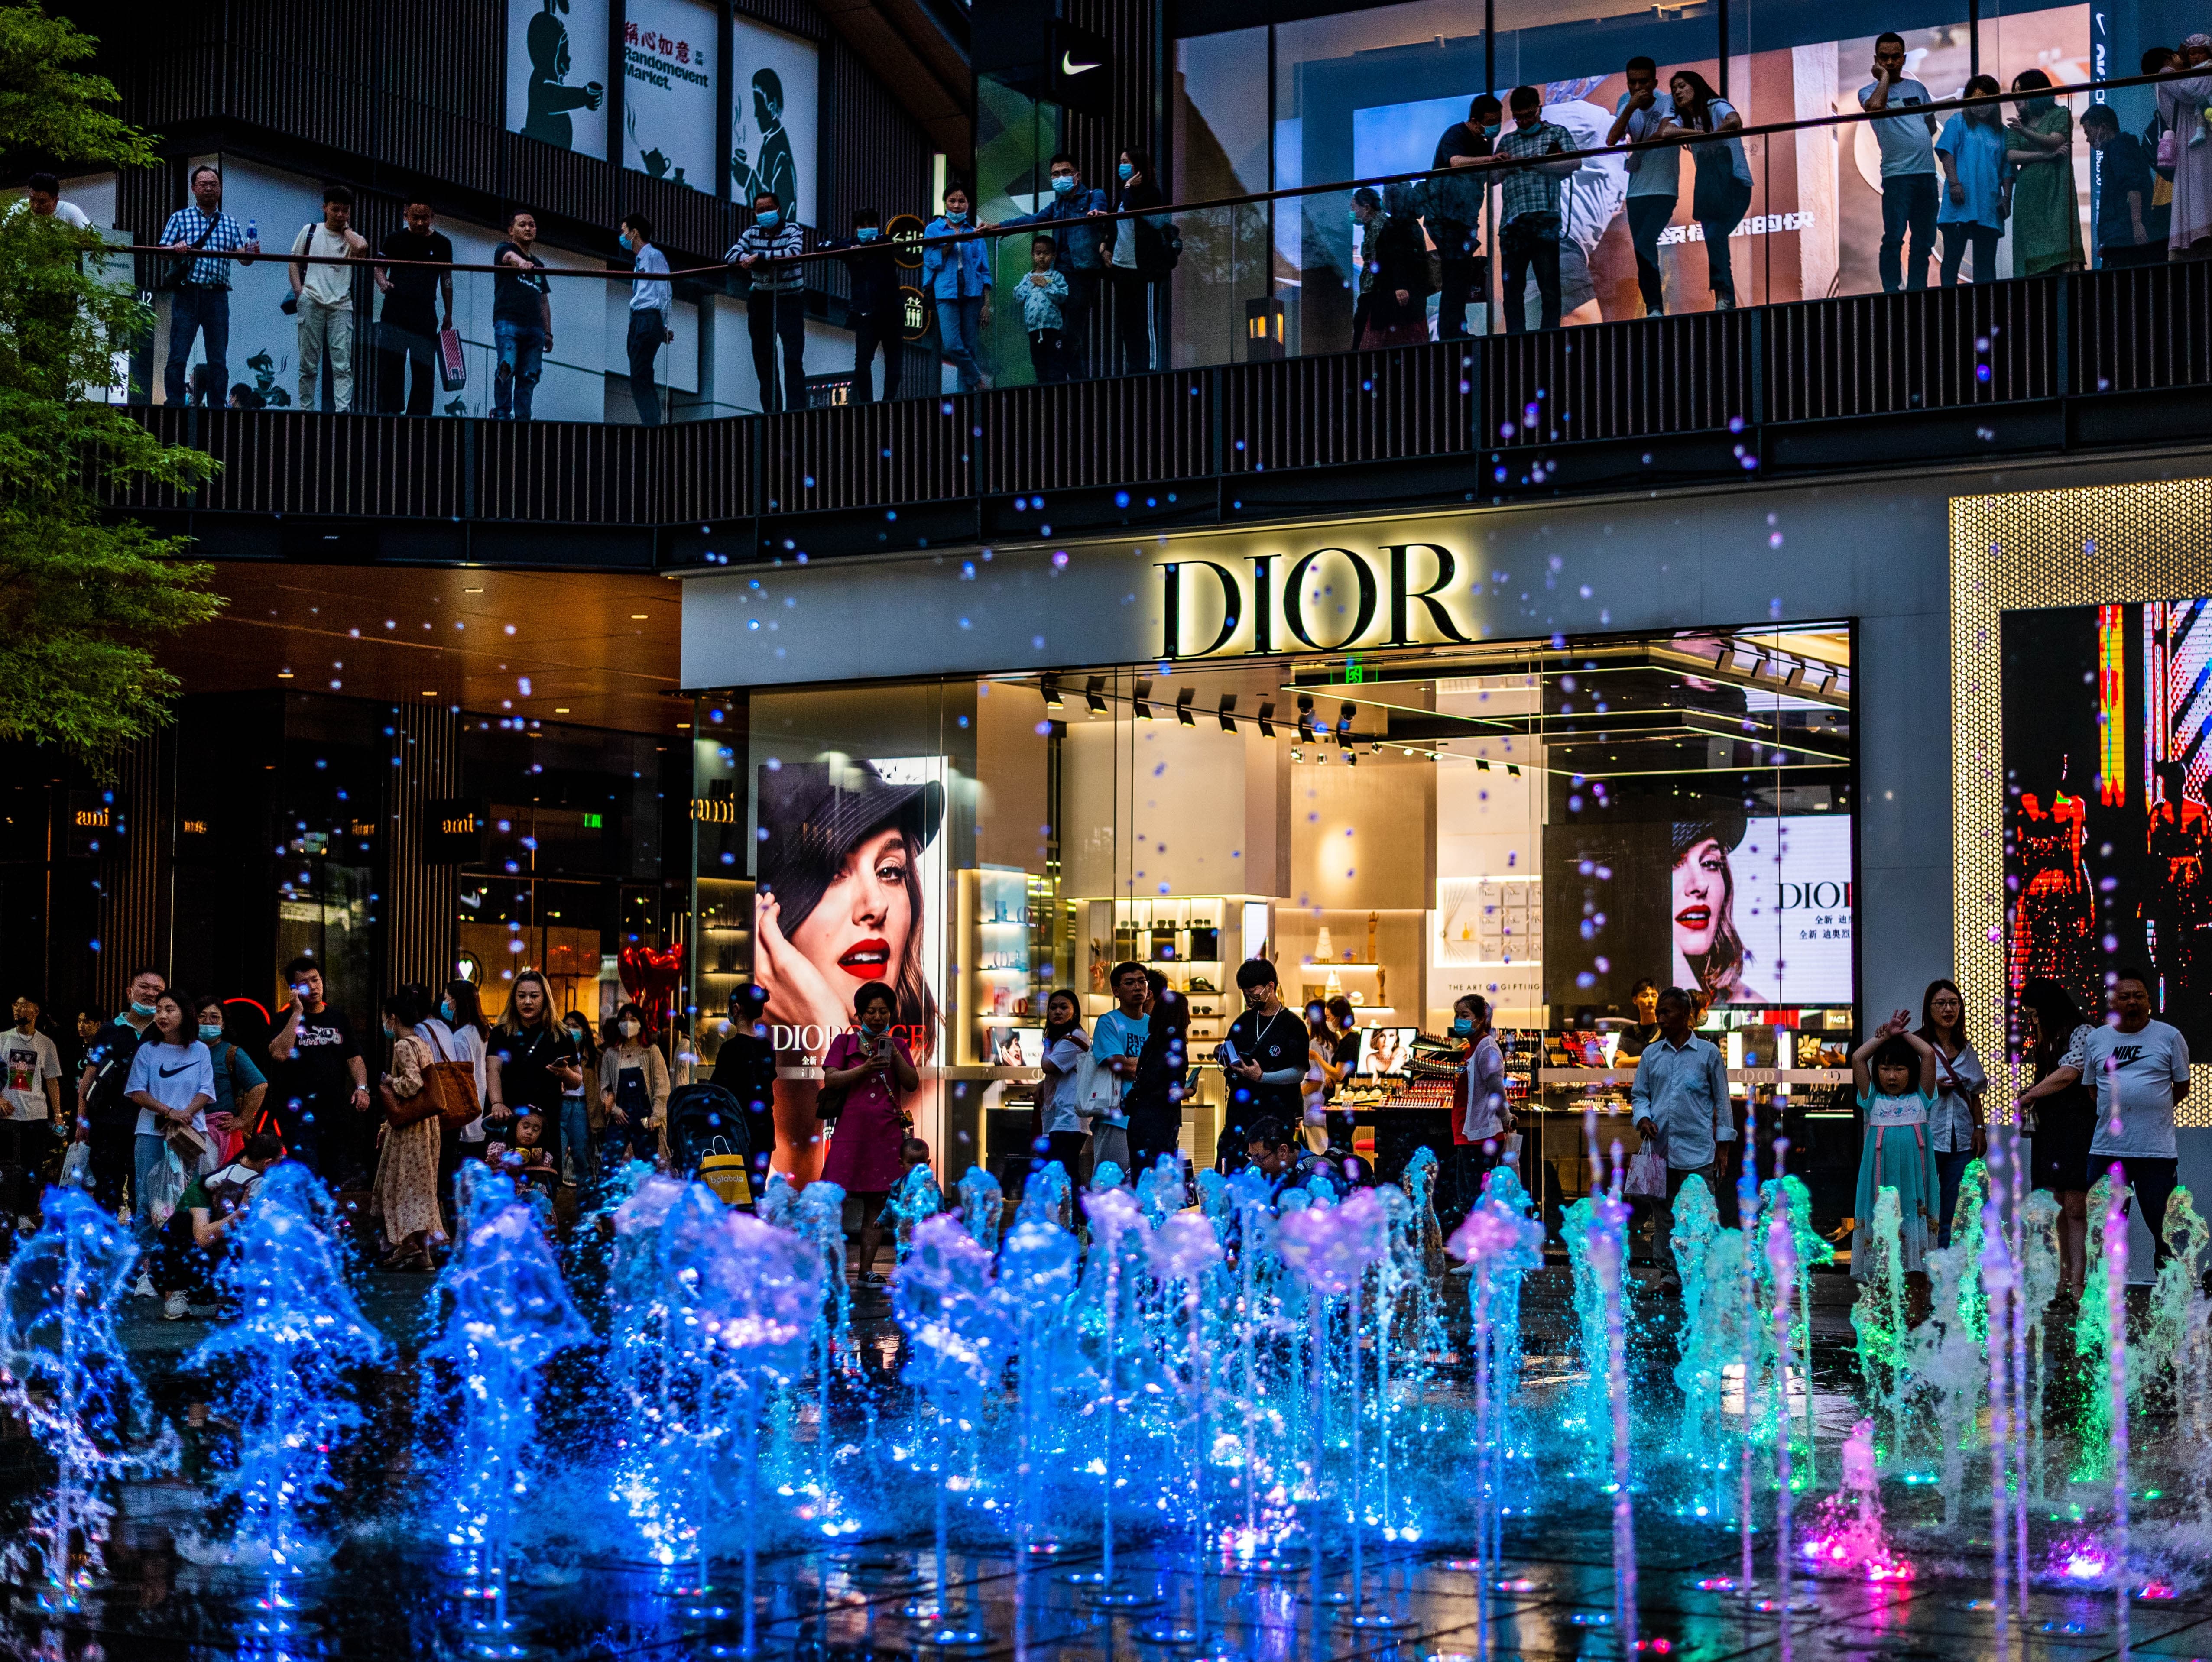 A Dior shop in a shopping mall